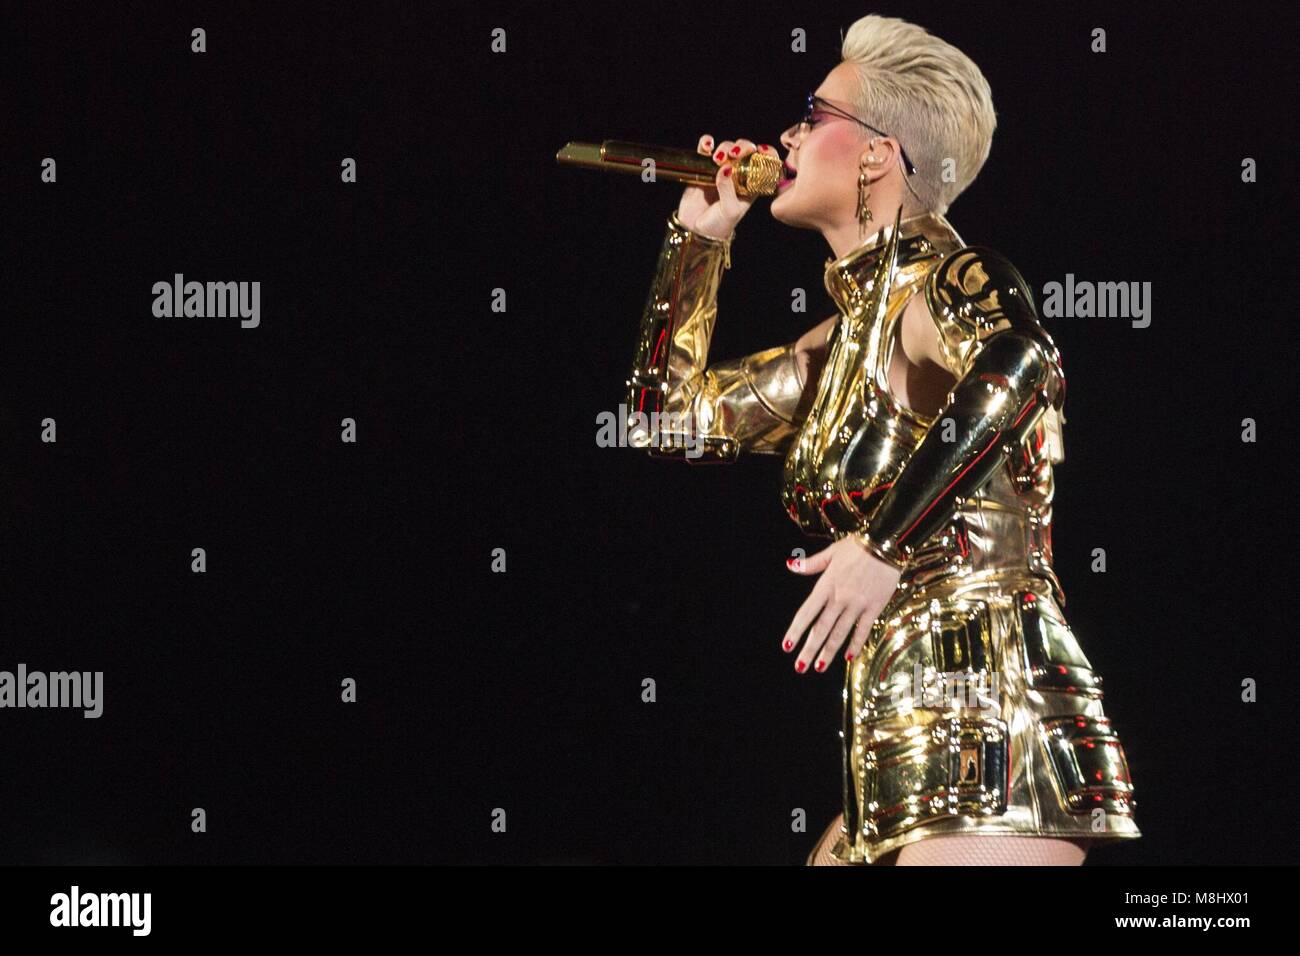 SÃO PAULO, Brasilien - 17. März: Katy Perry führt während der Zeuge die Tour zeigen bei der Allianz. 17. März 2018 in São Paulo, Brasilien Credit: Adriana Spaca/Alamy leben Nachrichten Stockfoto